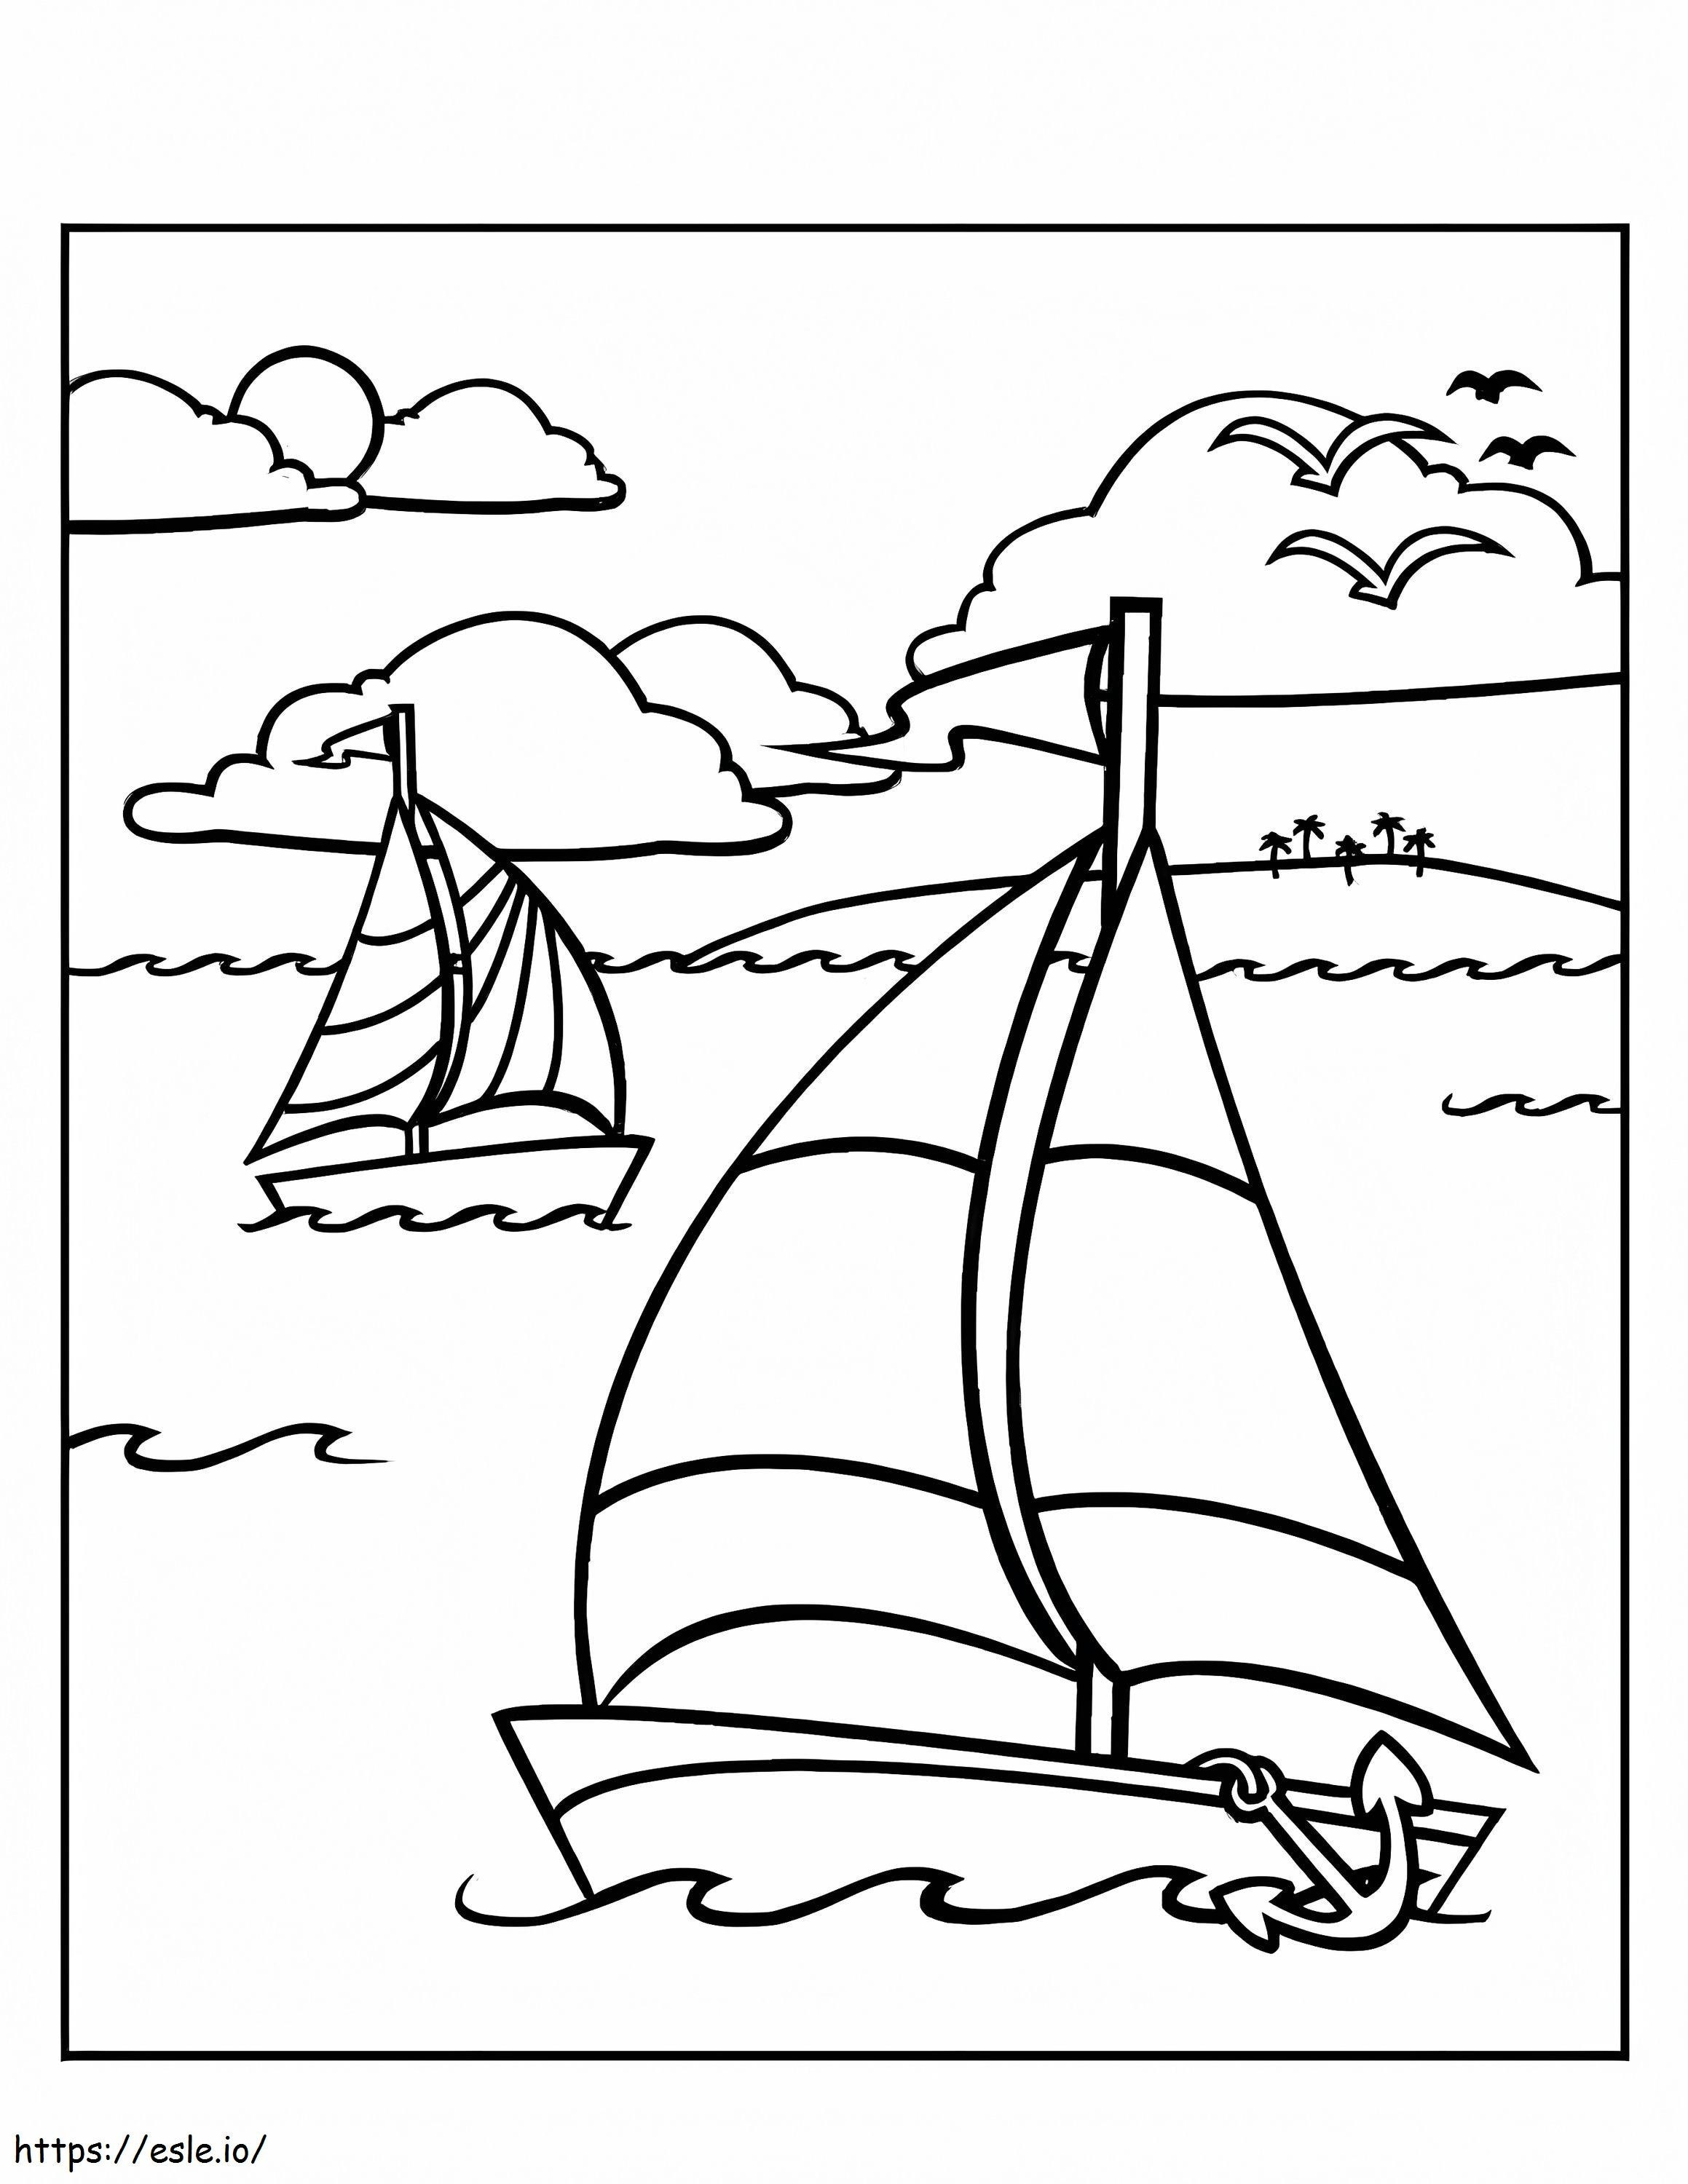 Sailboats coloring page